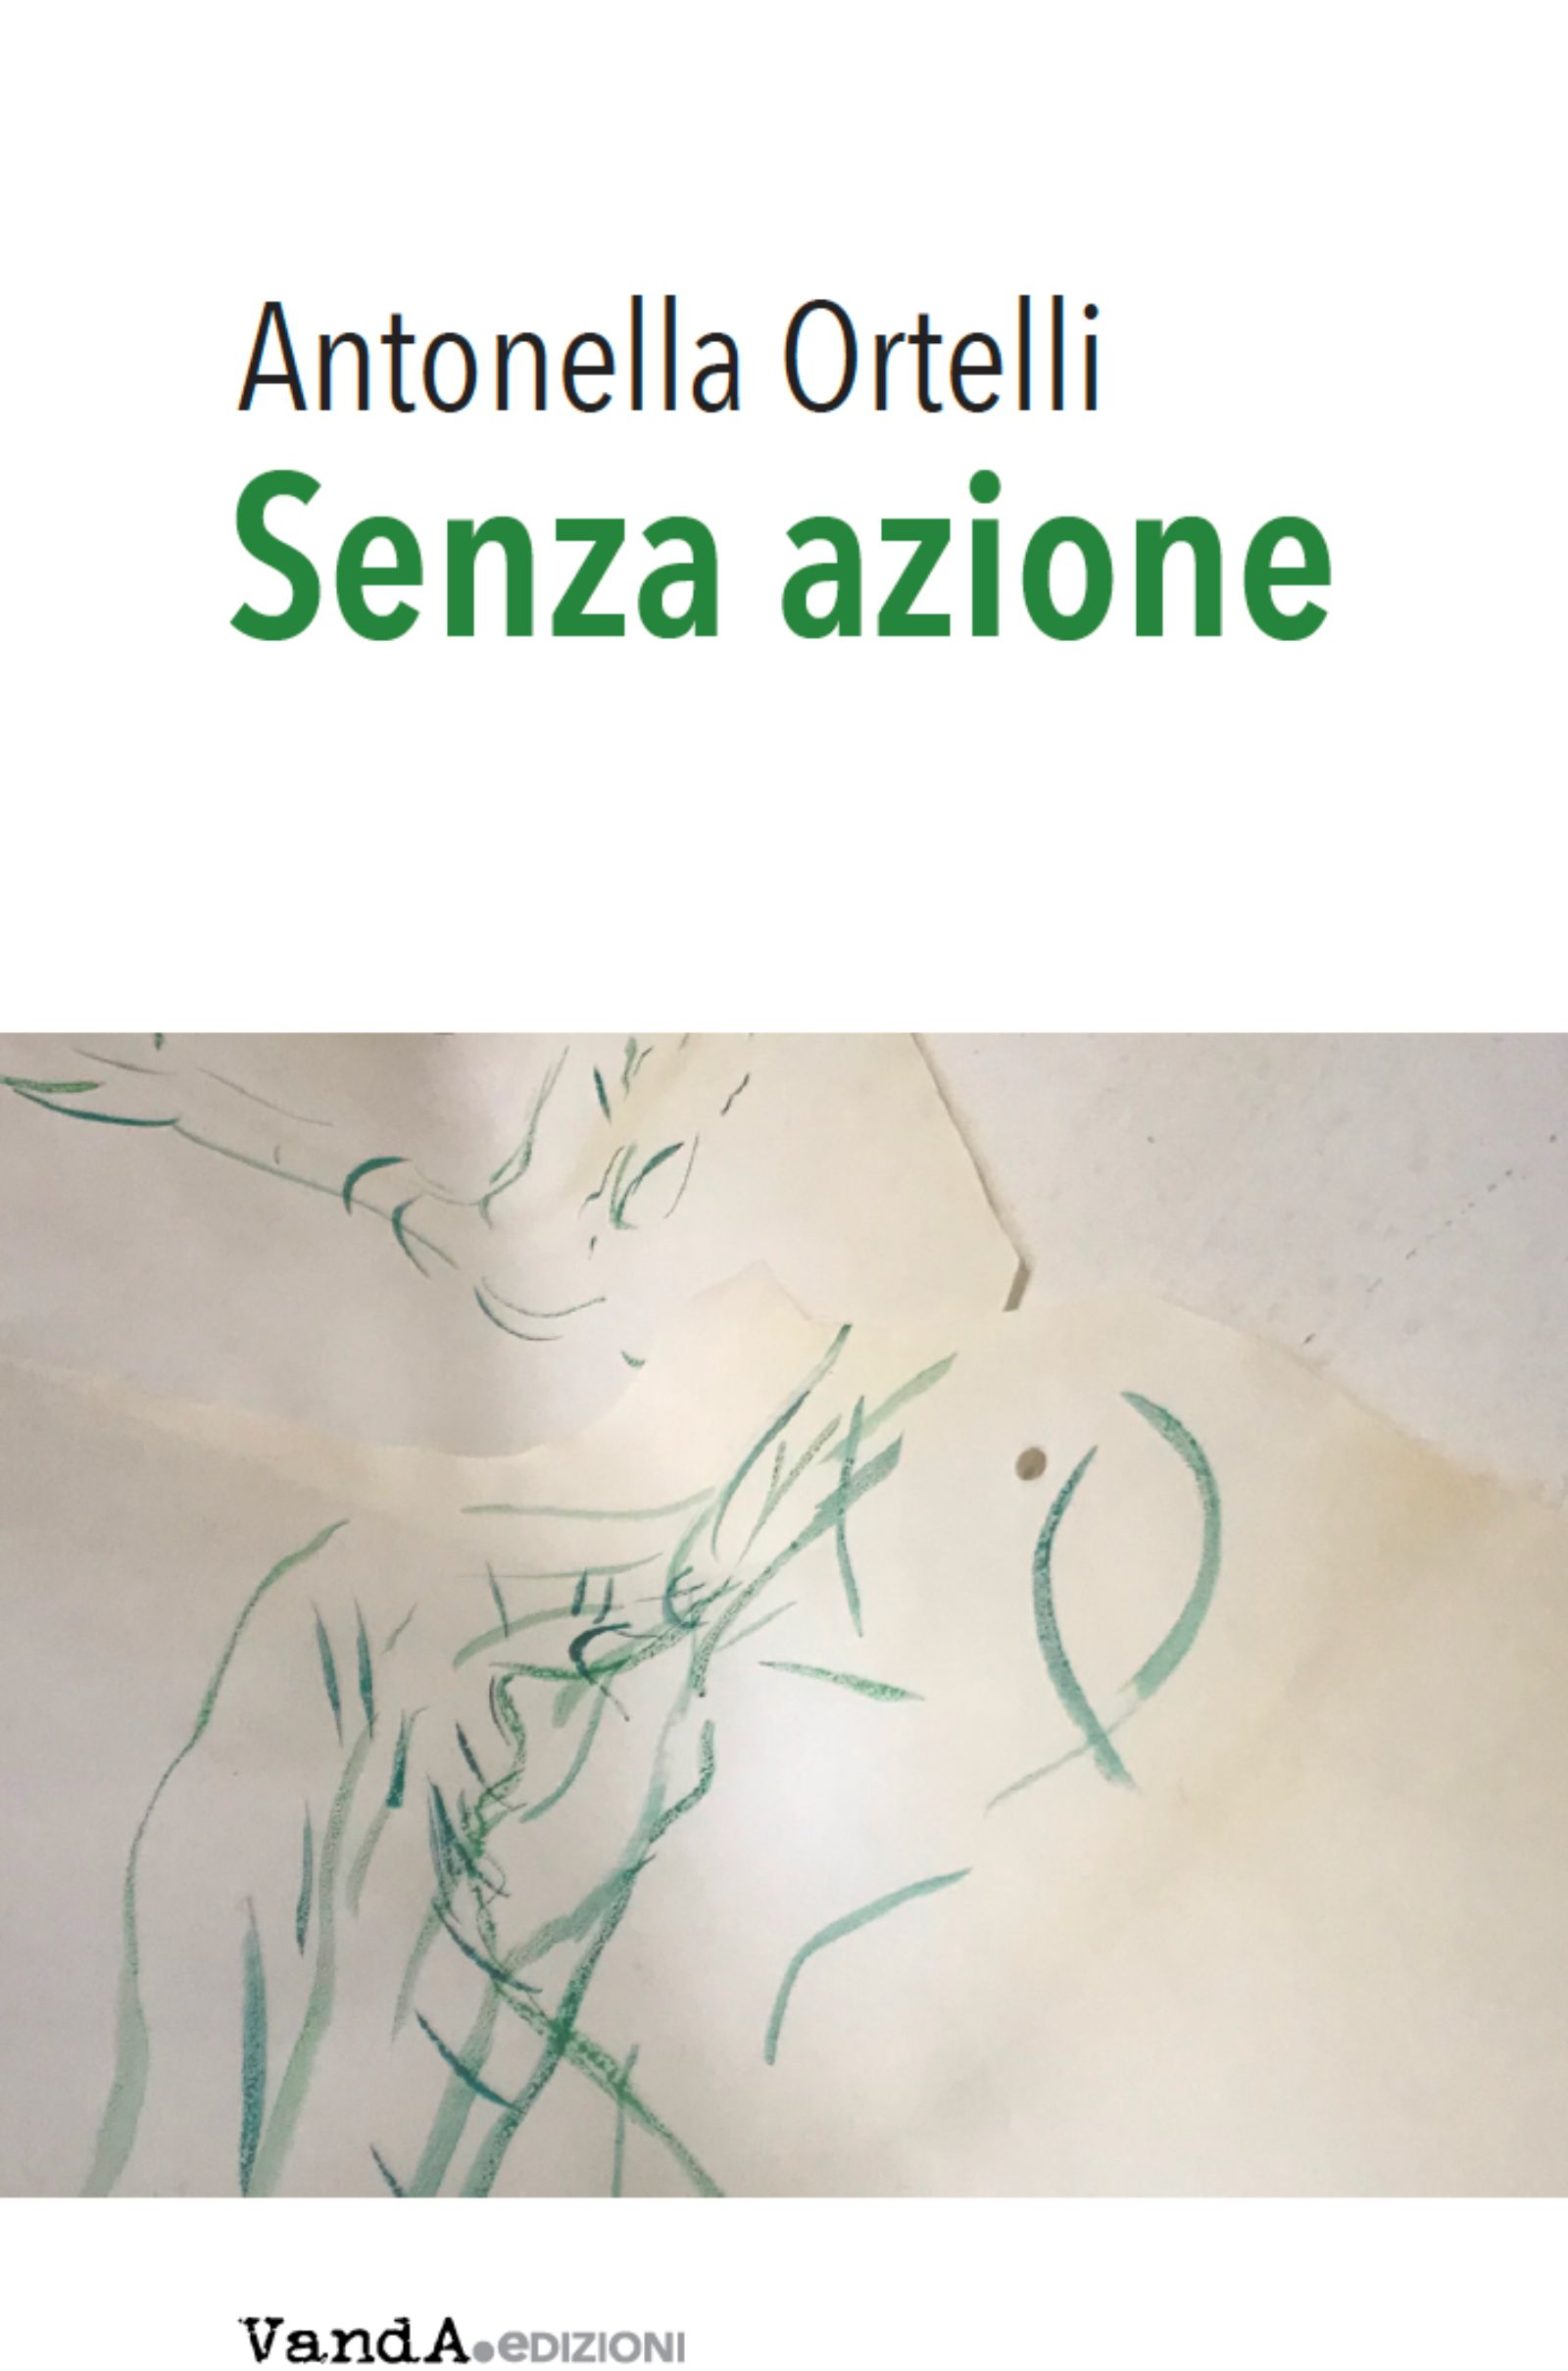 “Senza azione”. Un libro di Antonella Ortelli.